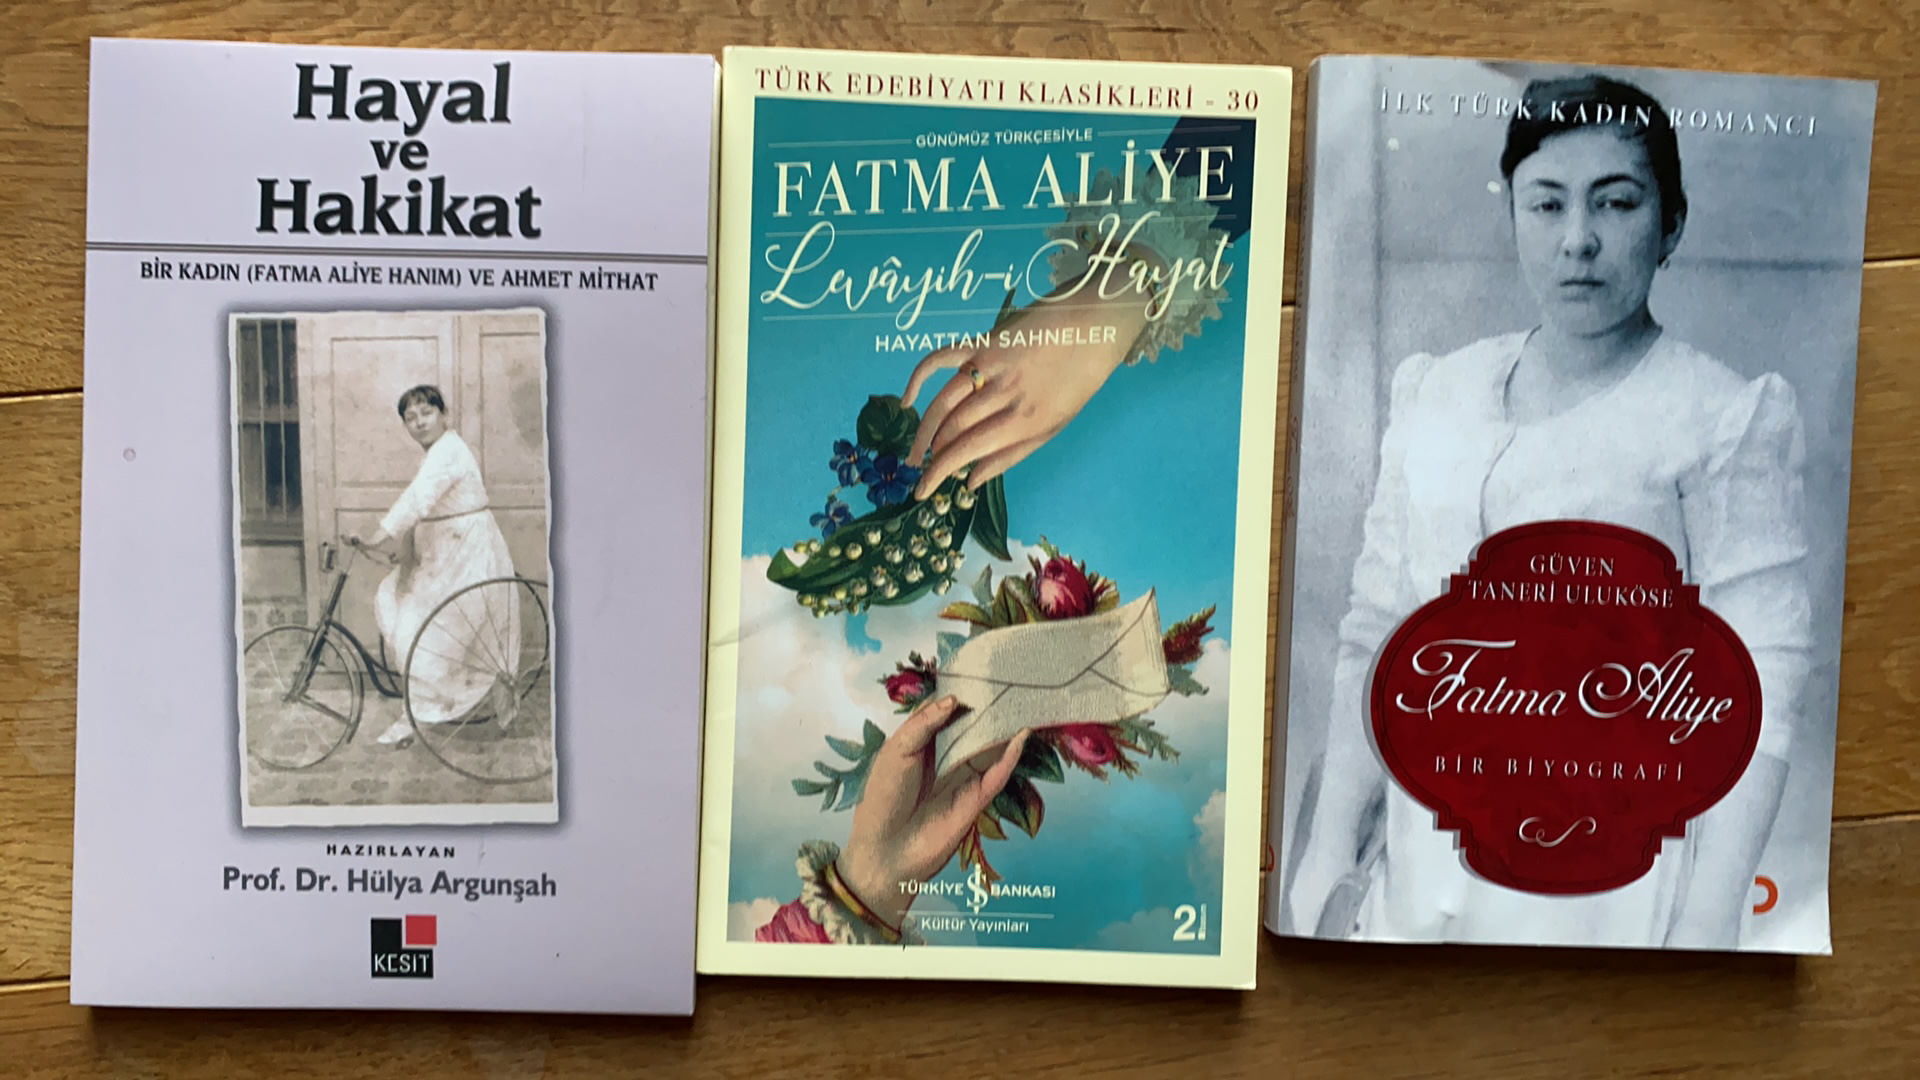 Bücher von Fatma Aliye, der ersten türkischen Schriftstellerin.